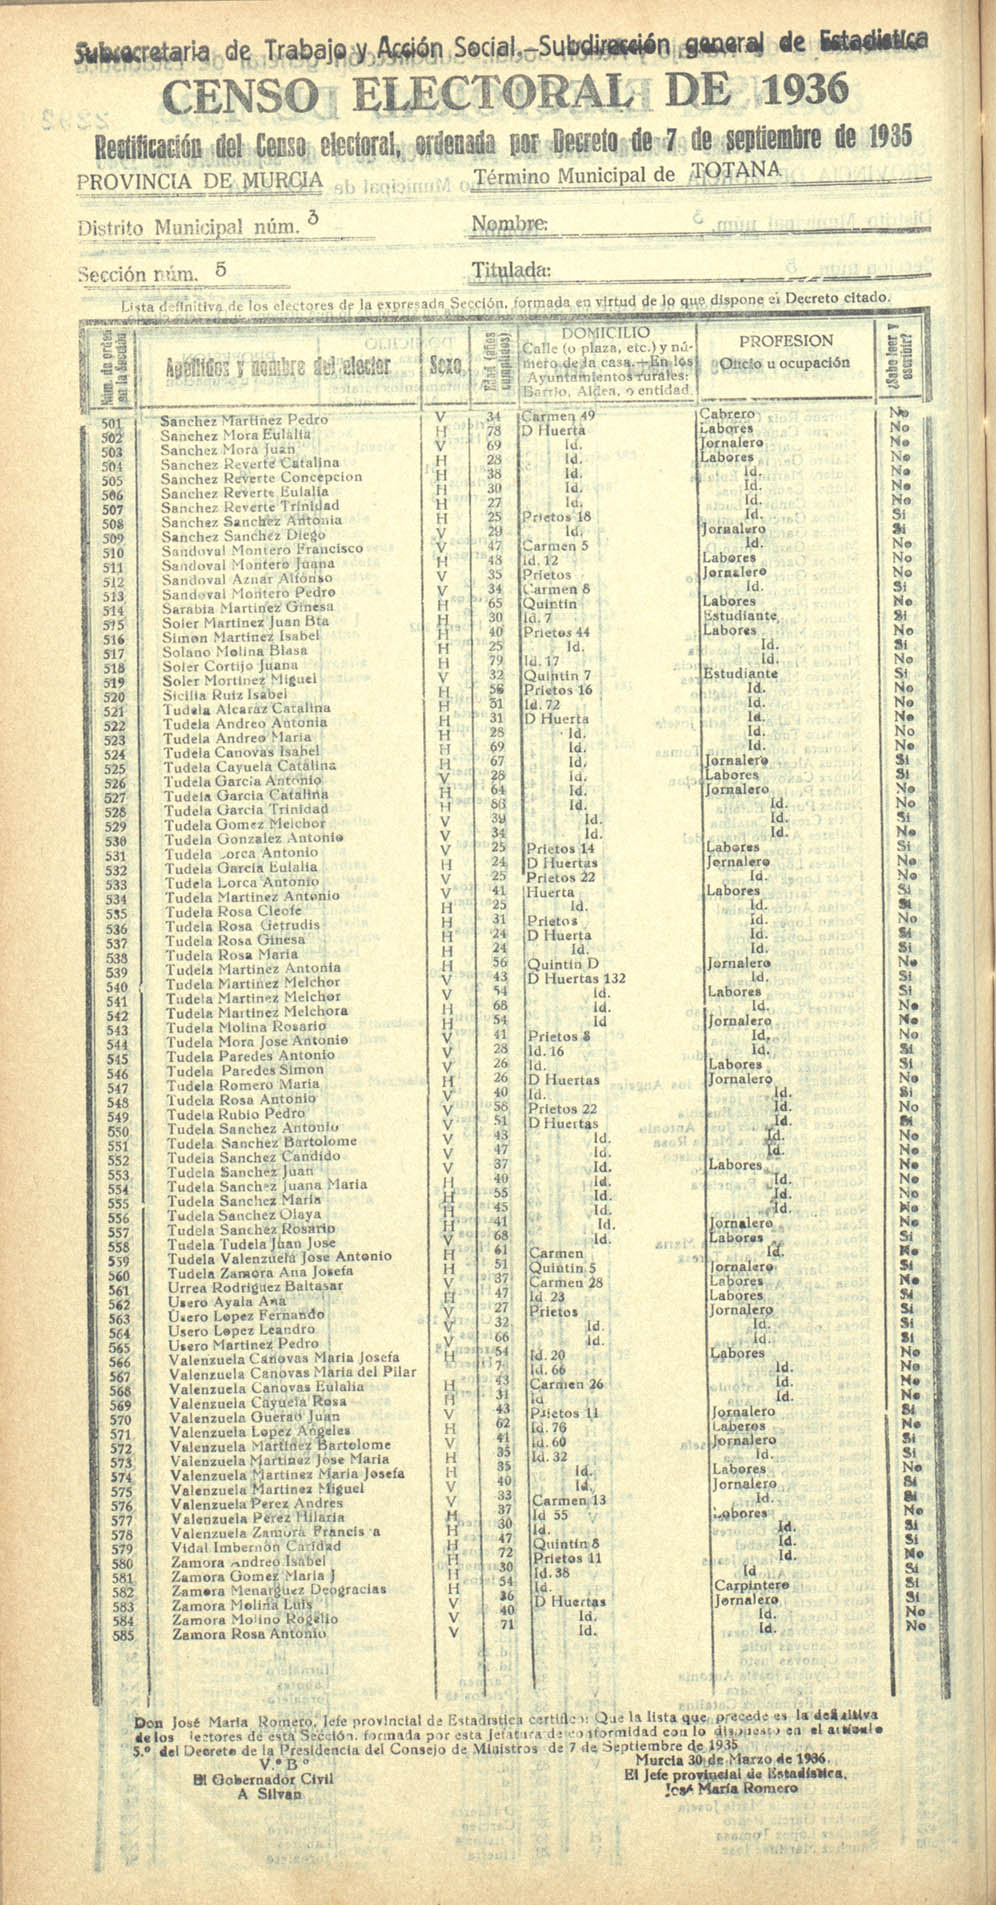 Censo electoral provincial de 1936. Totana. Distrito 3ª. Sección 5ª